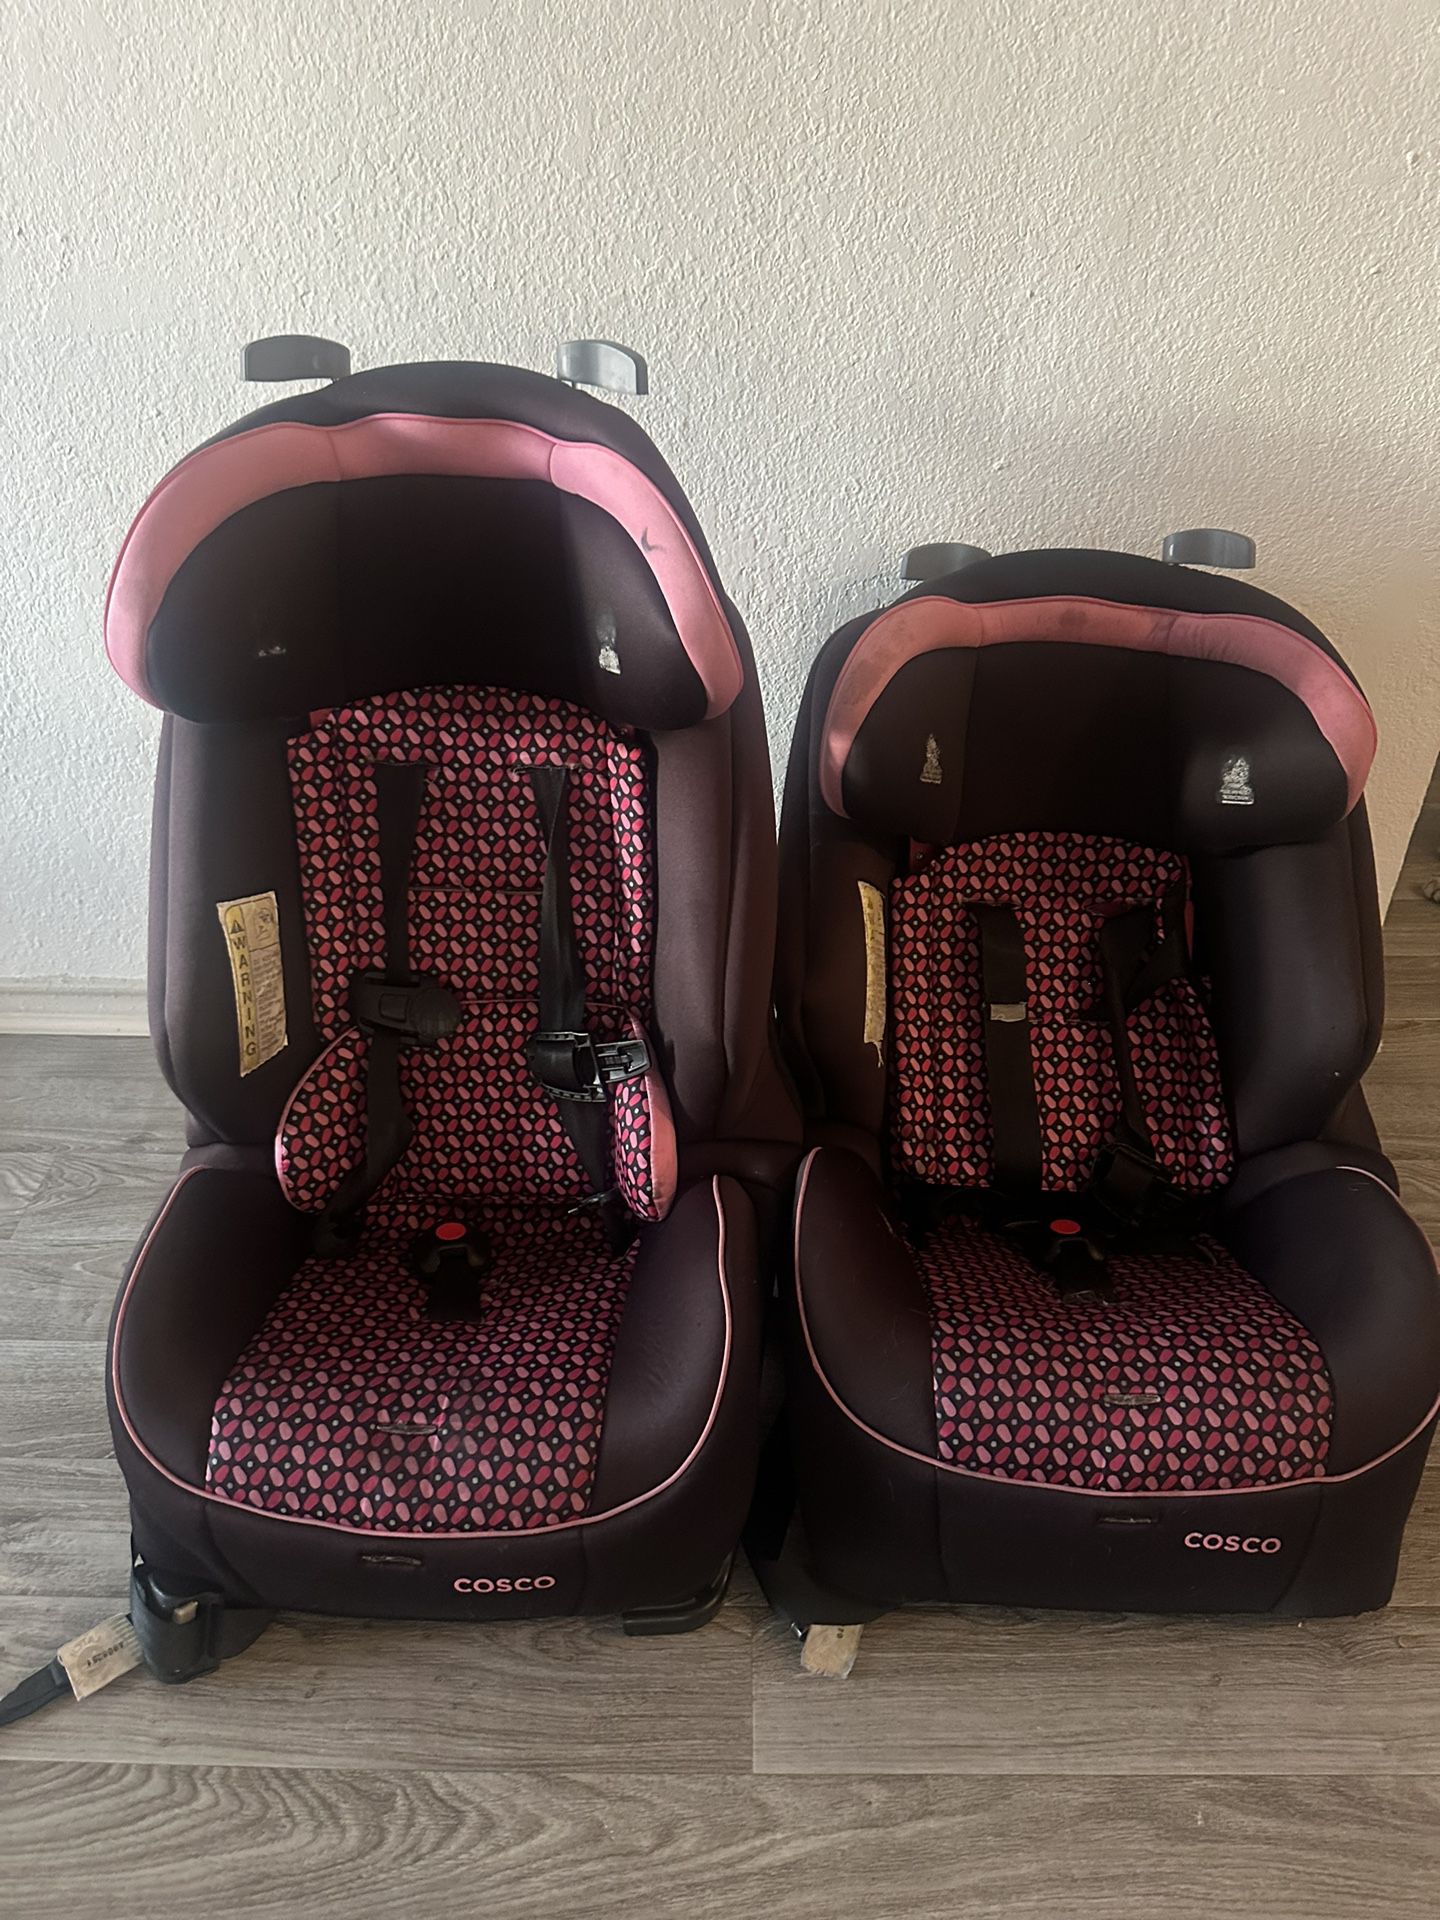 Toddler Car Seats 